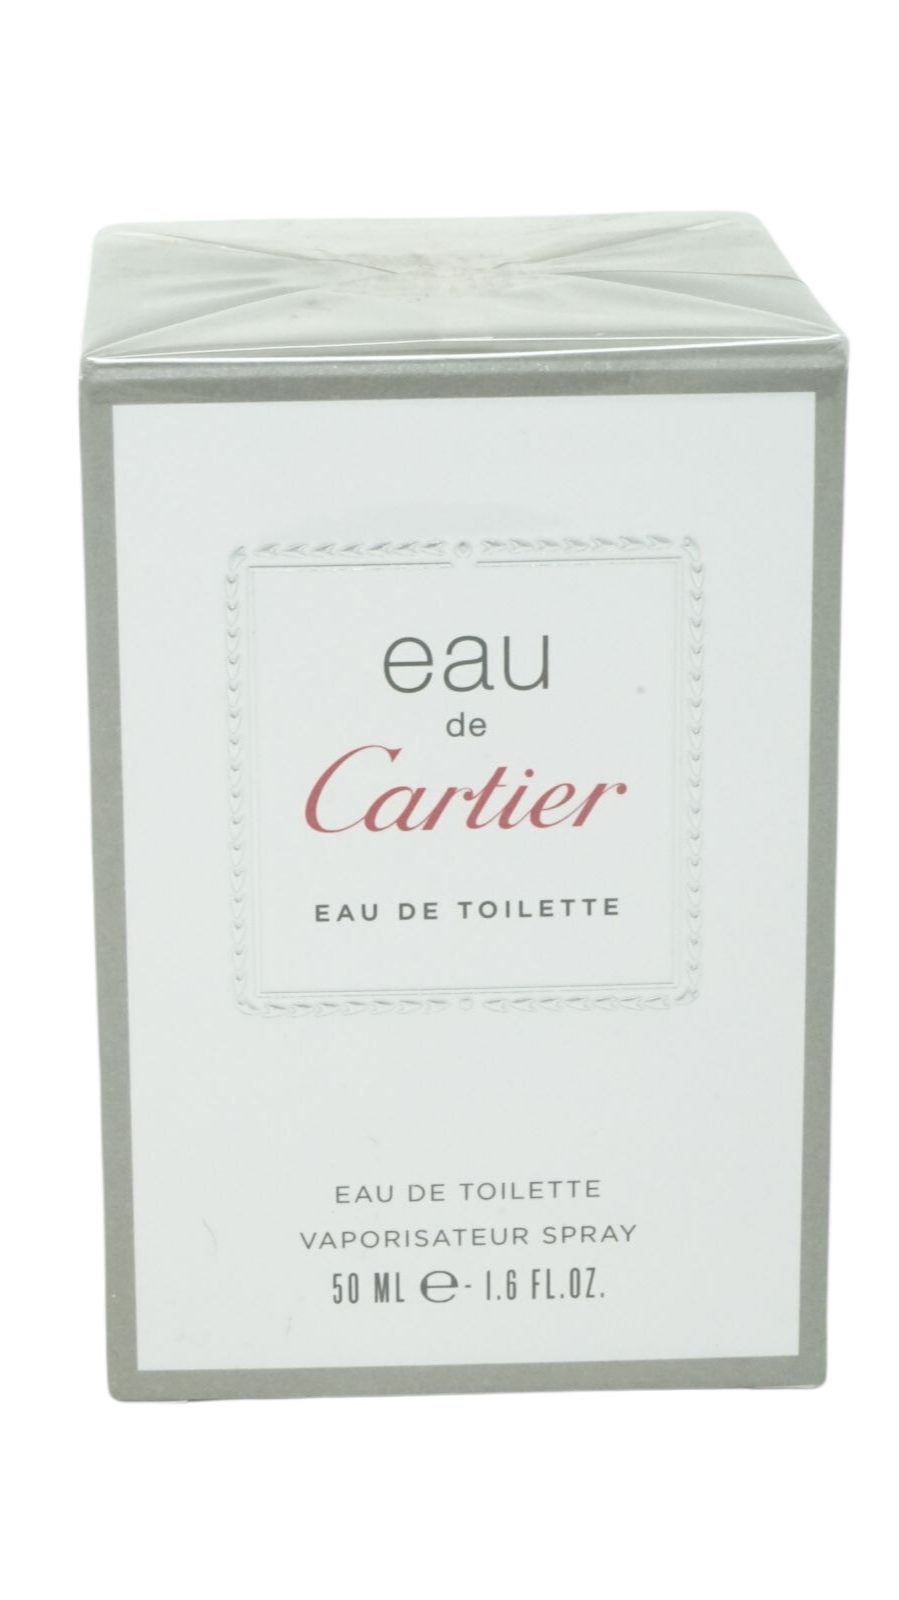 Cartier Eau de Toilette Eau 50ml Spray Eau Toilette Cartier de de Cartier